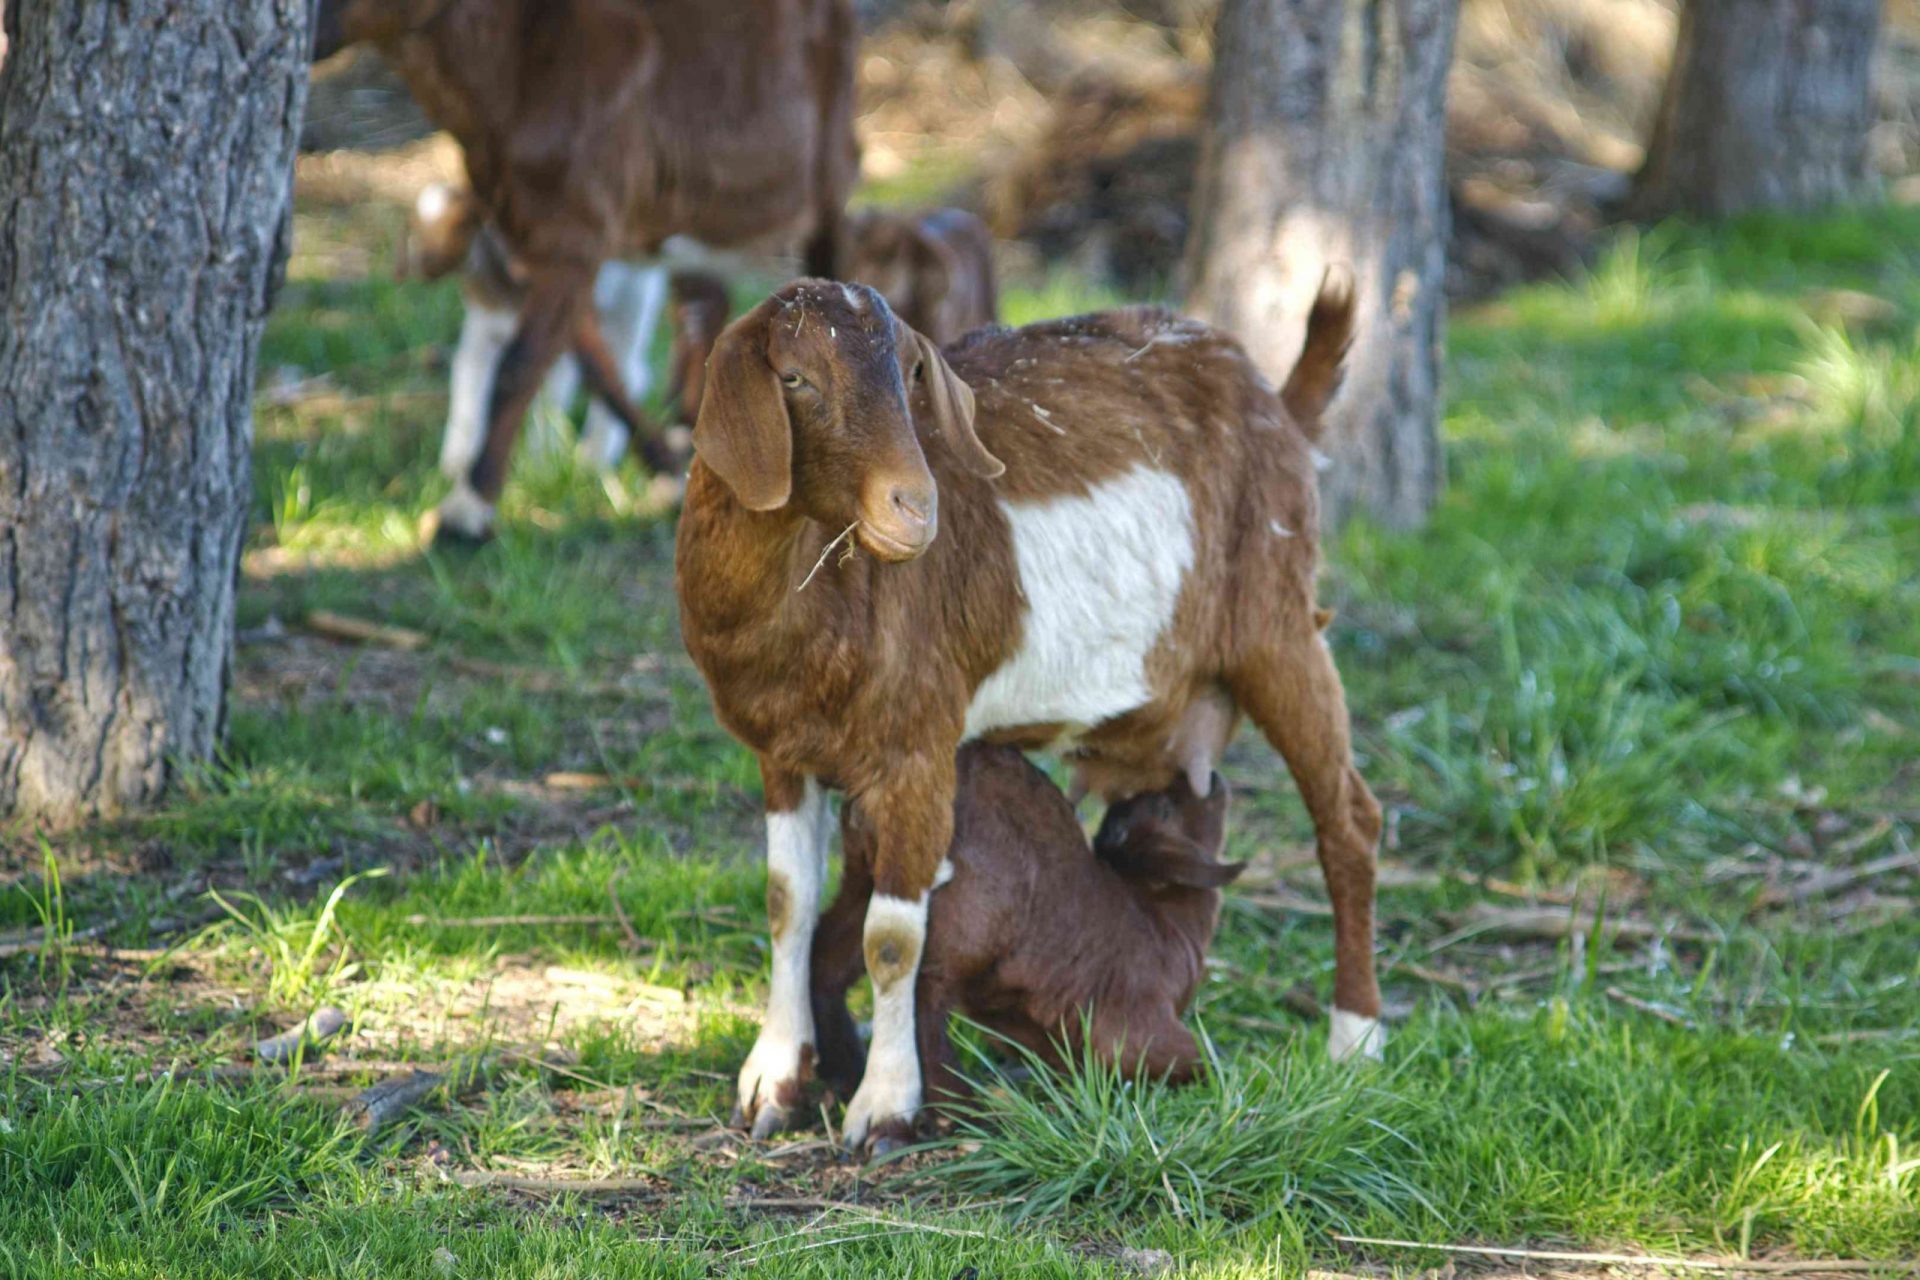 La mamá cabra marrón y blanca alimenta a su bebé con leche de cabra al aire libre rodeada de árboles